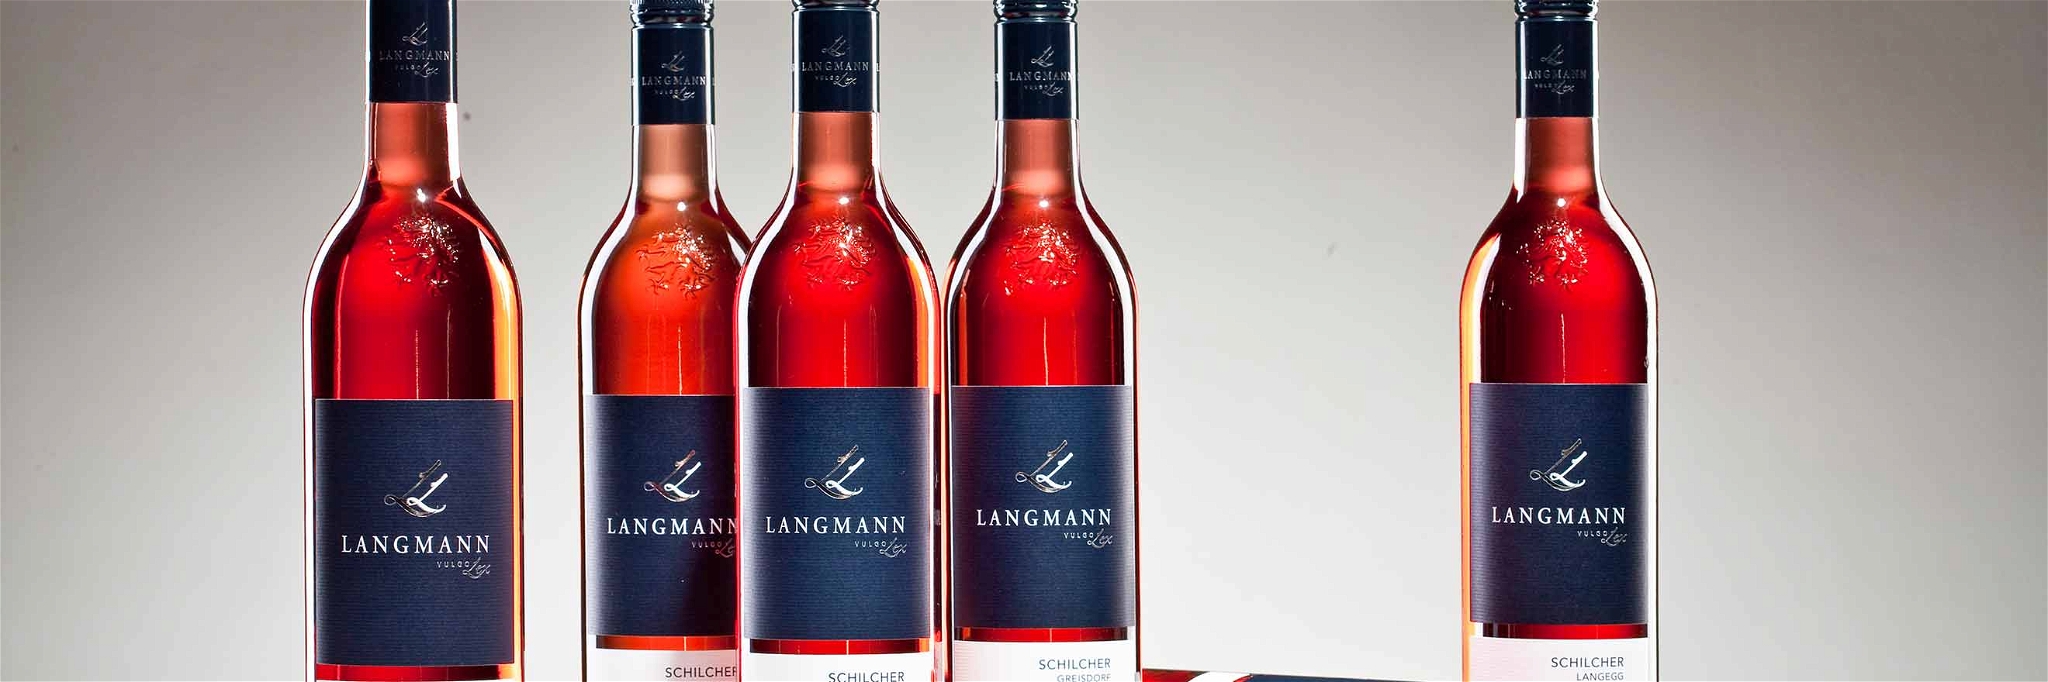 Schilcher-Kollektion vom Weingut Langmann vulgo Lex